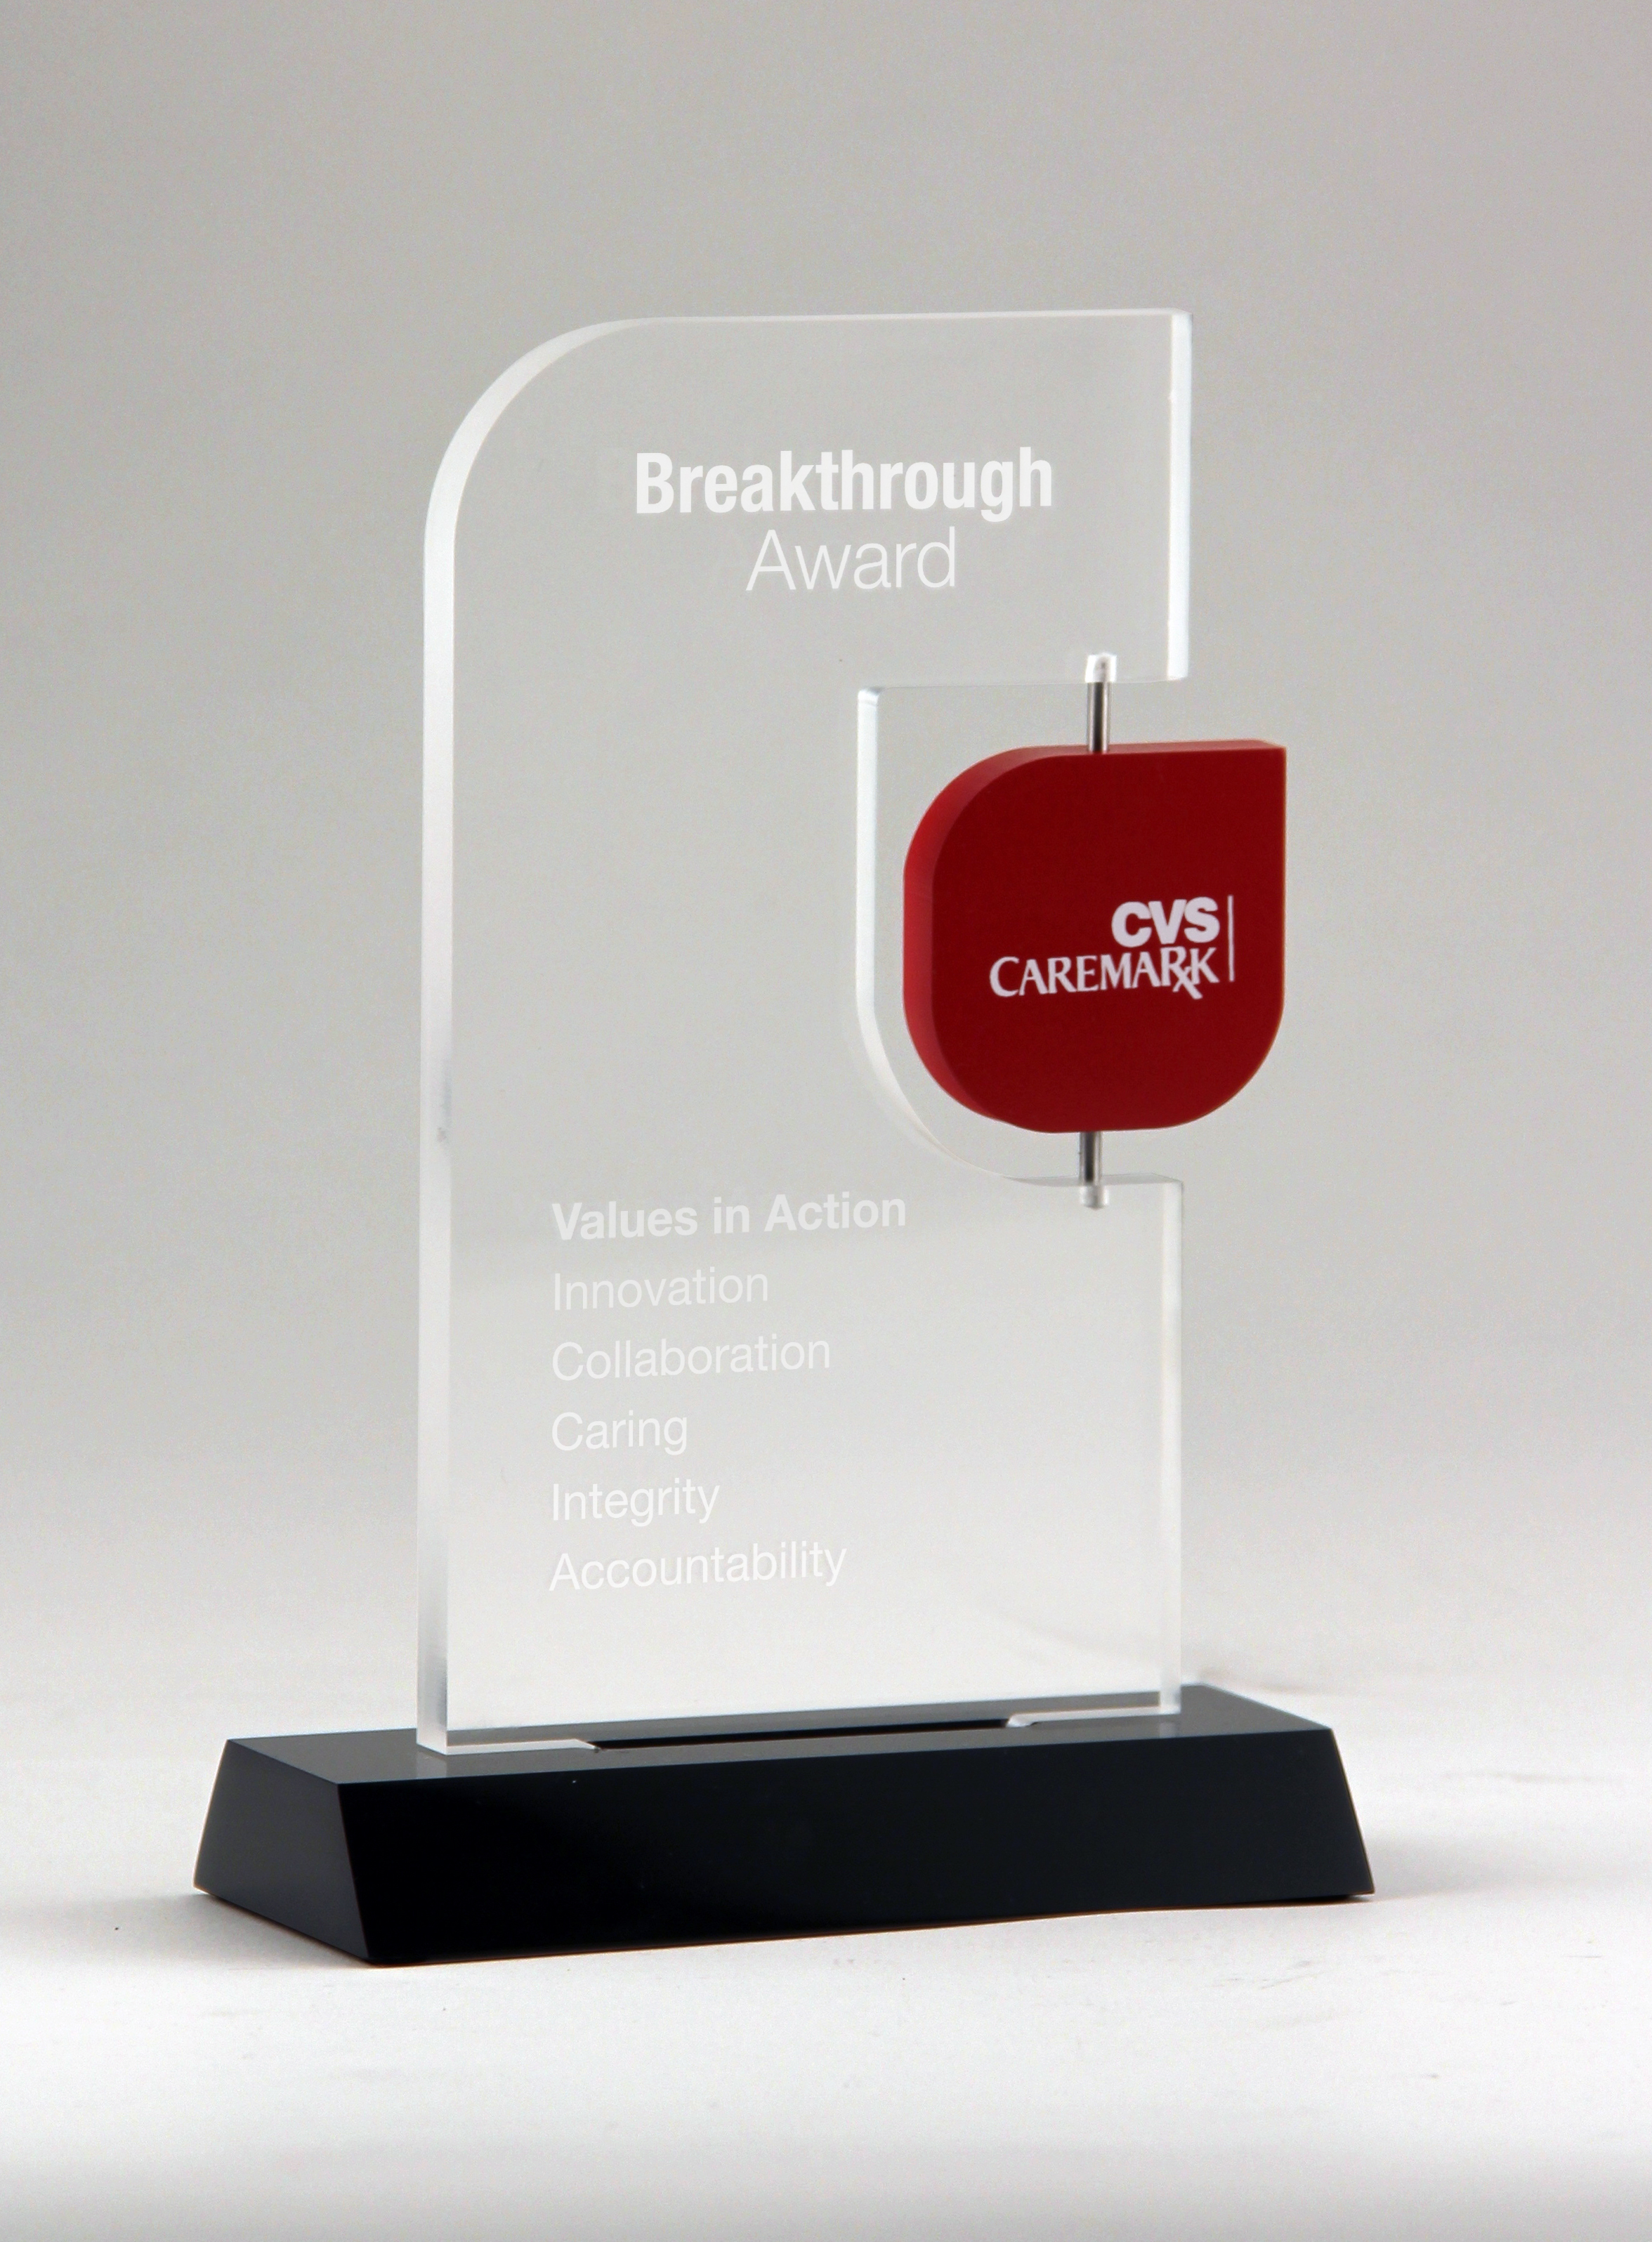 cvs caremark breakthrough award